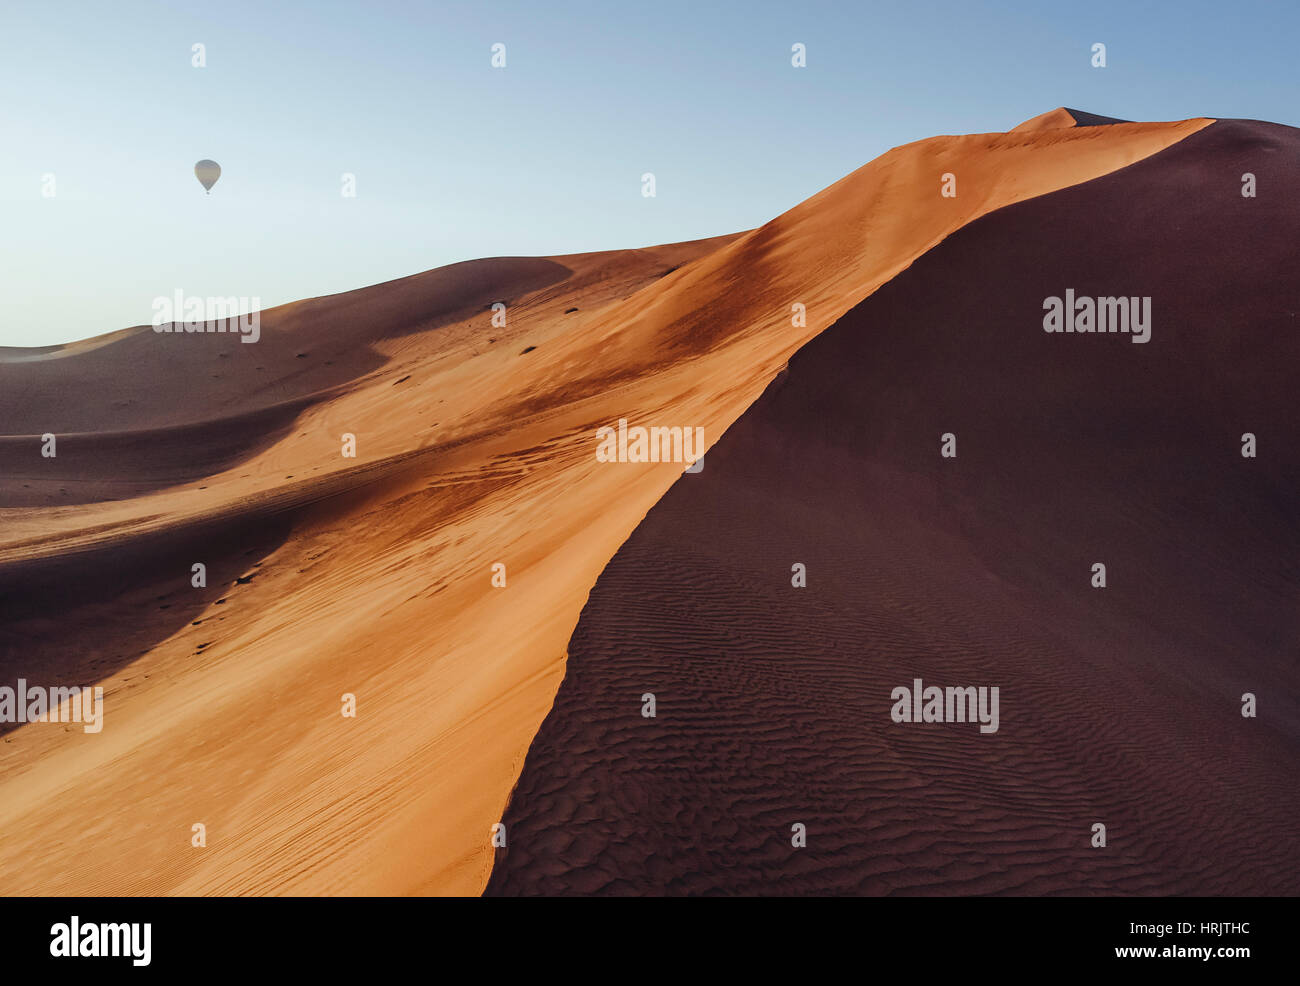 Eine Sanddüne in der Wüste, mit einem Heißluftballon in den blauen Himmel über. Stockfoto